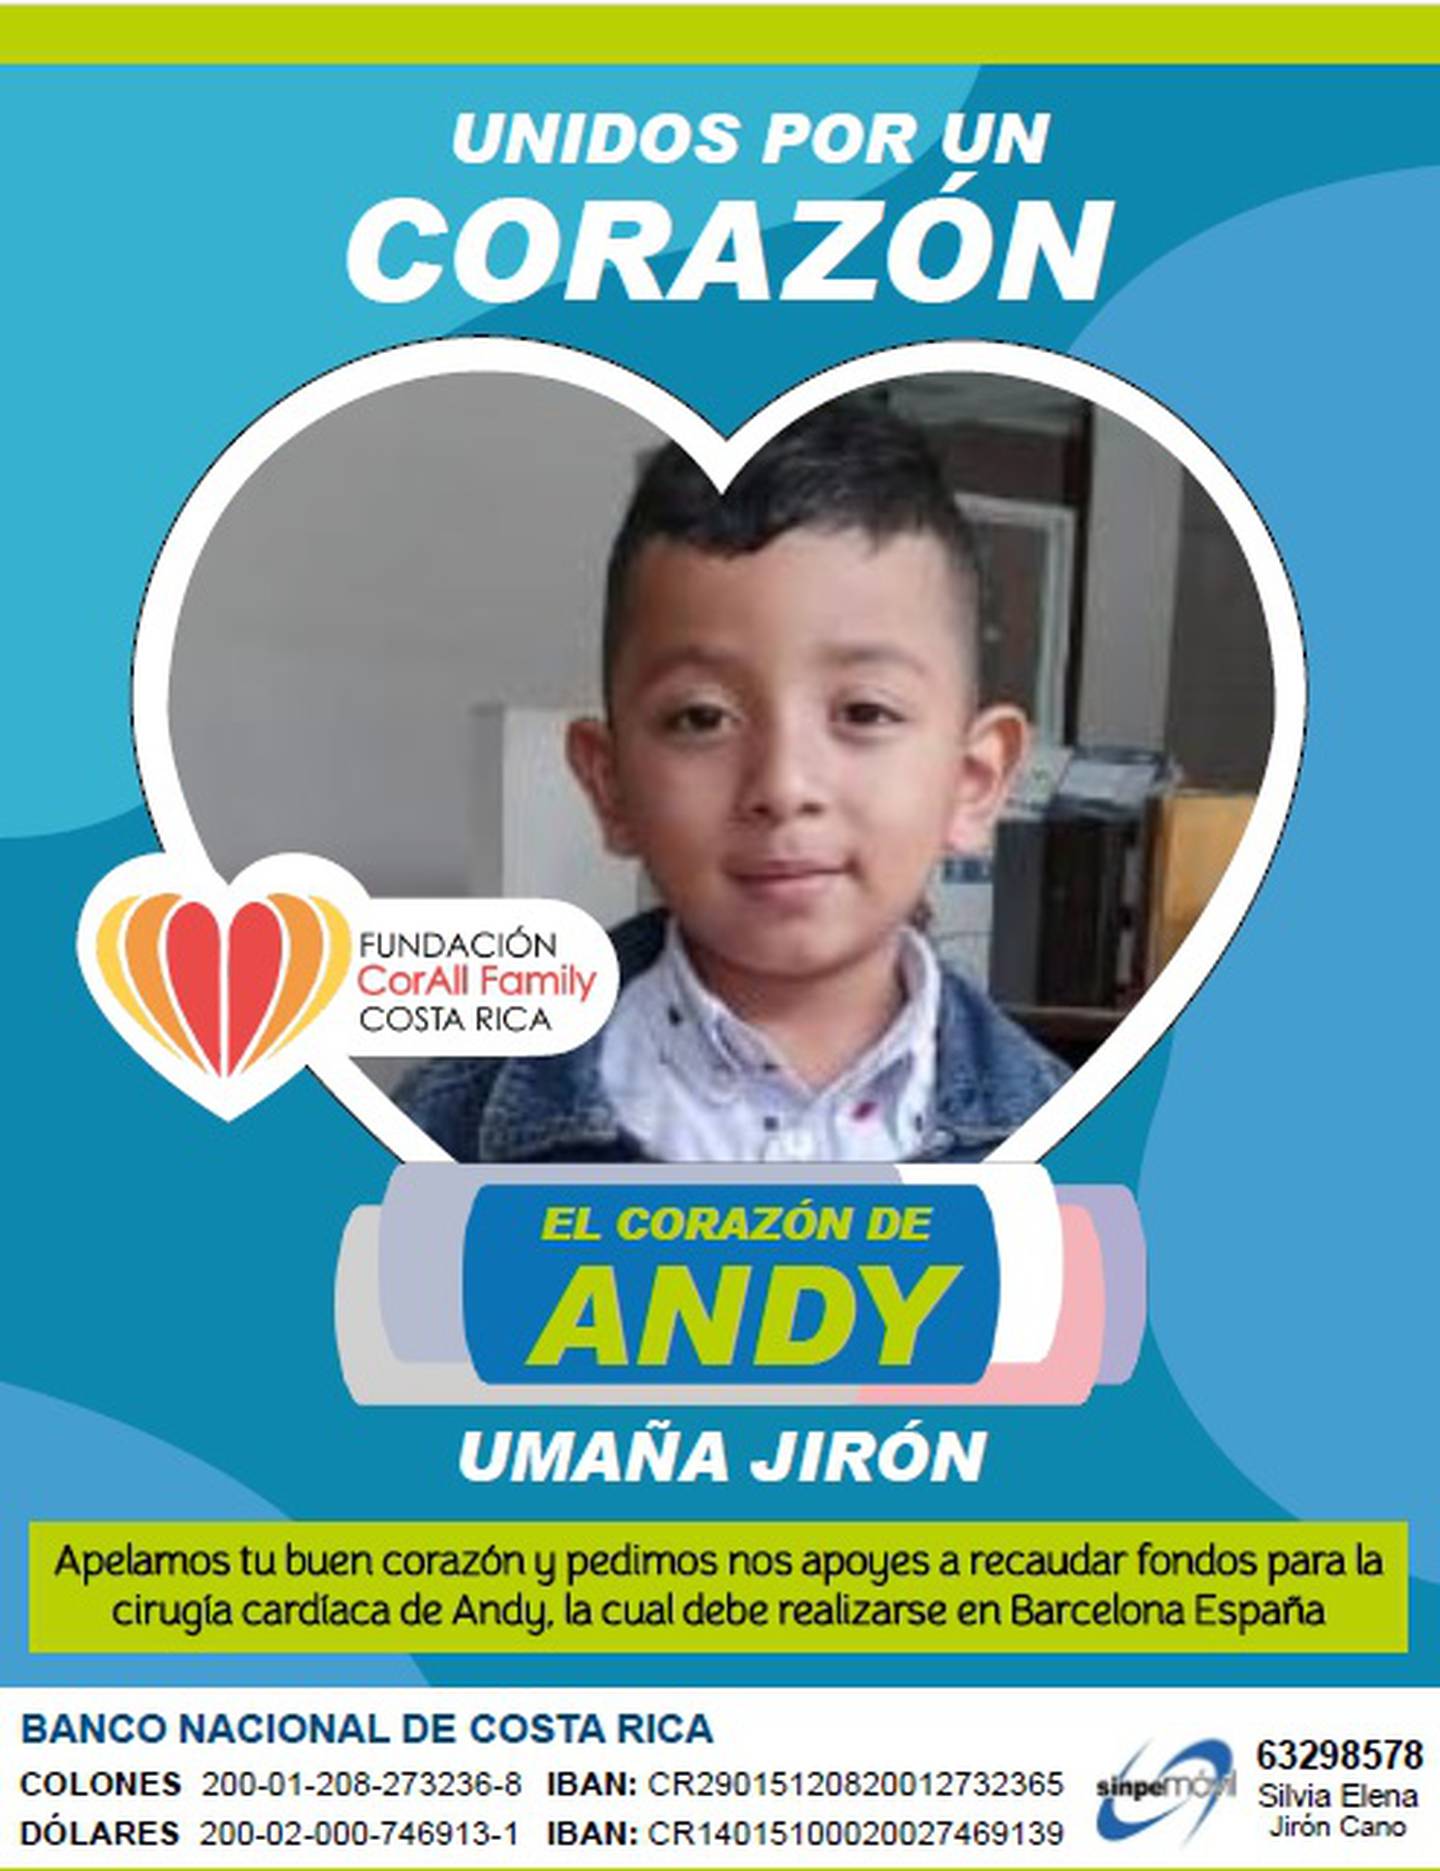 Andy Umaña Jirón, quien tiene 7 años, sufre de un problema en su corazón desde que nació y ocupa ahora operarse en España por eso hay una campaña para recoger unos 35 millones de colones.